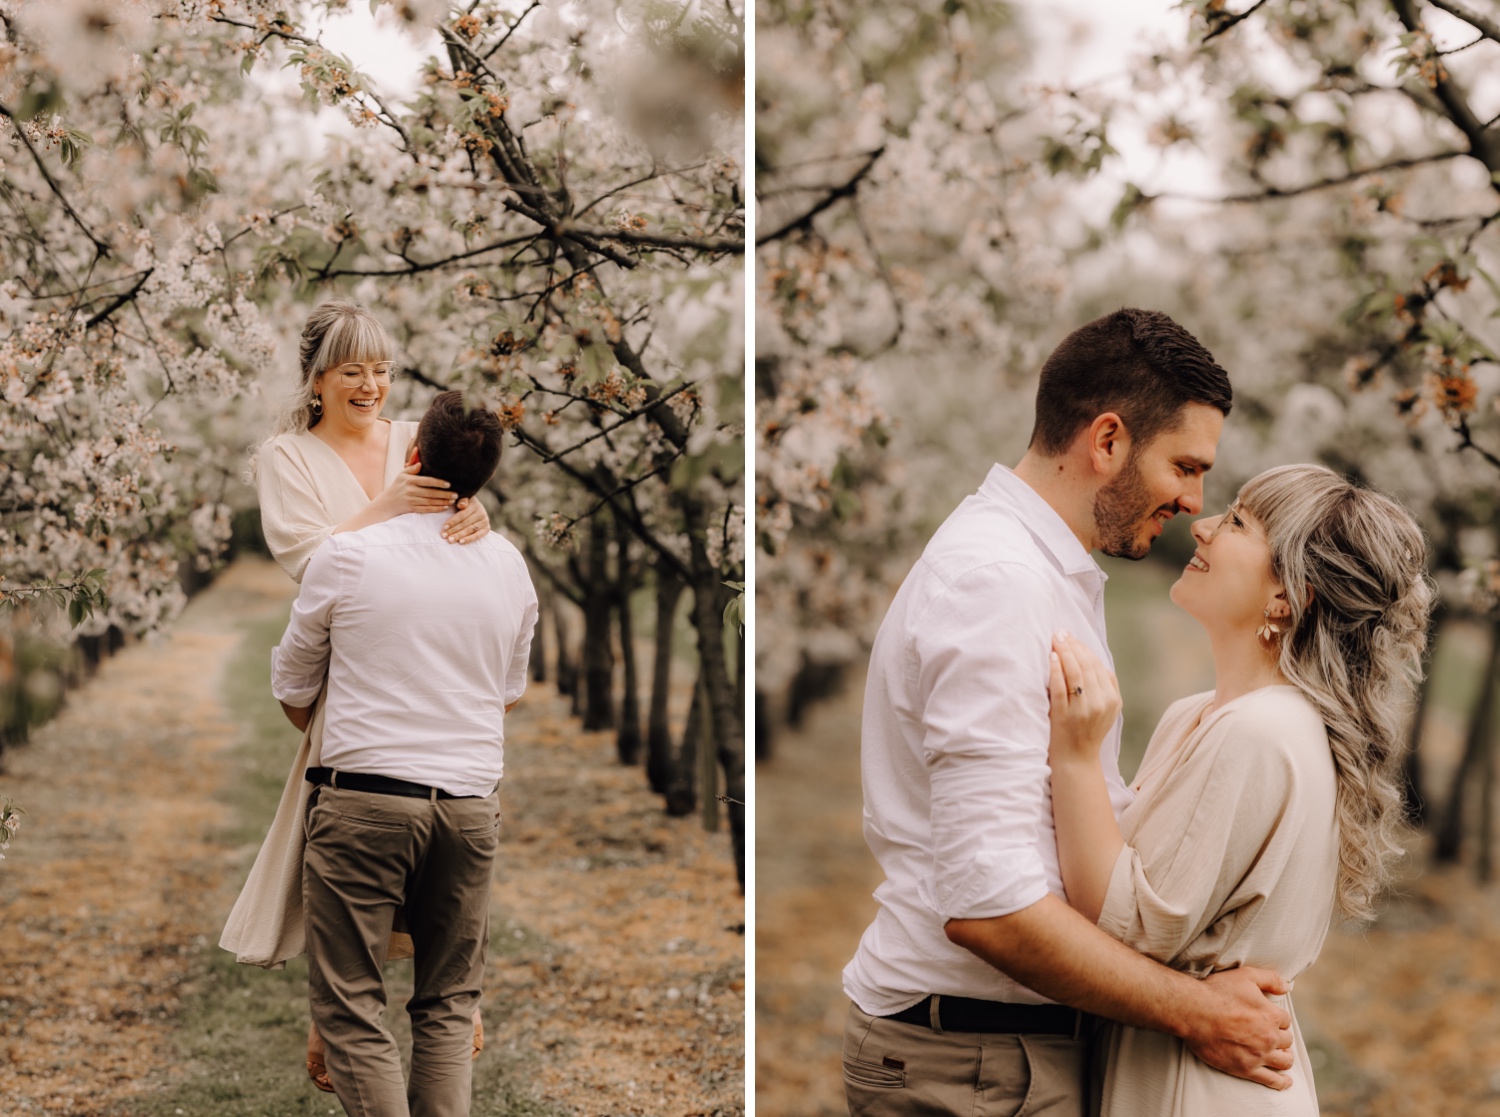 Huwelijksfotograaf Limburg - koppel kijkt elkaar in de ogen tussen de bloesems